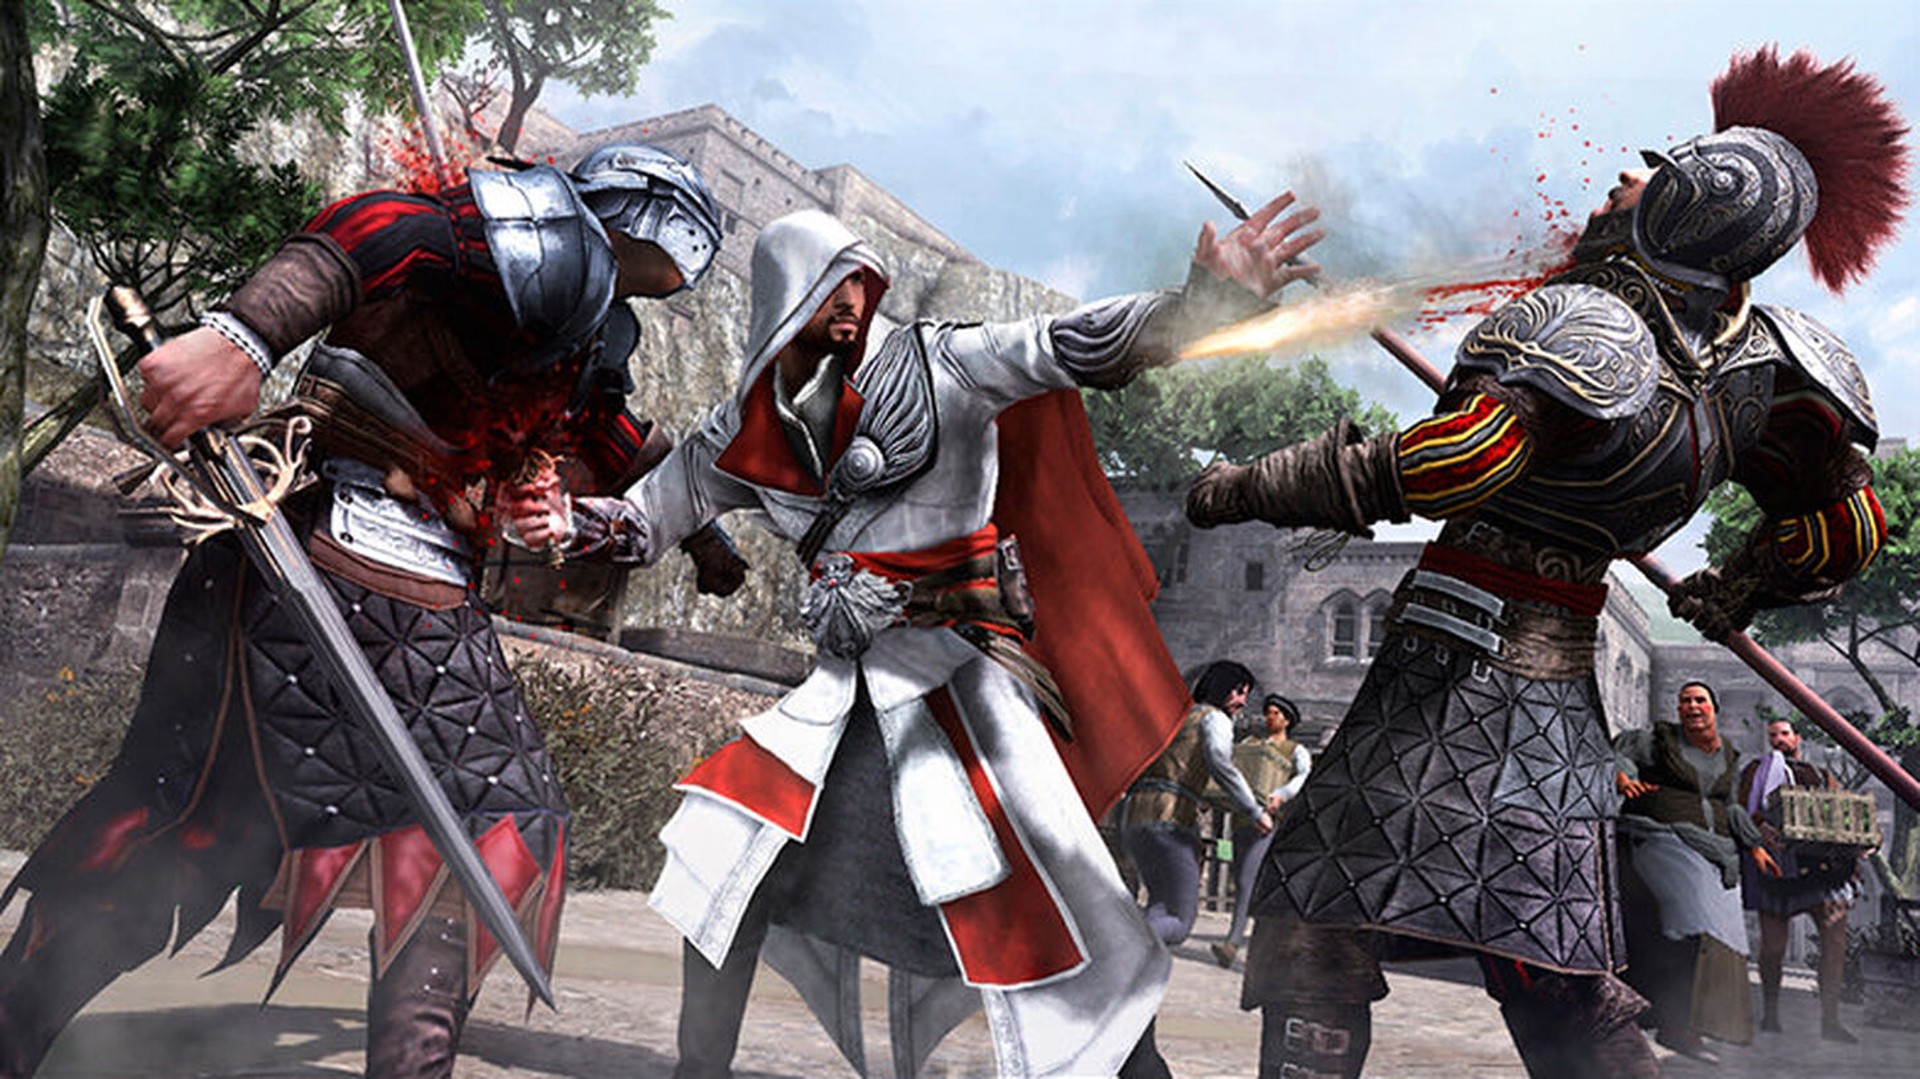 แฟนเกม Assassin’s Creed วางแผนจัดงานอำลา ชวนผู้เล่นเข้ามาเล่นก่อนระบบออนไลน์จะปิด